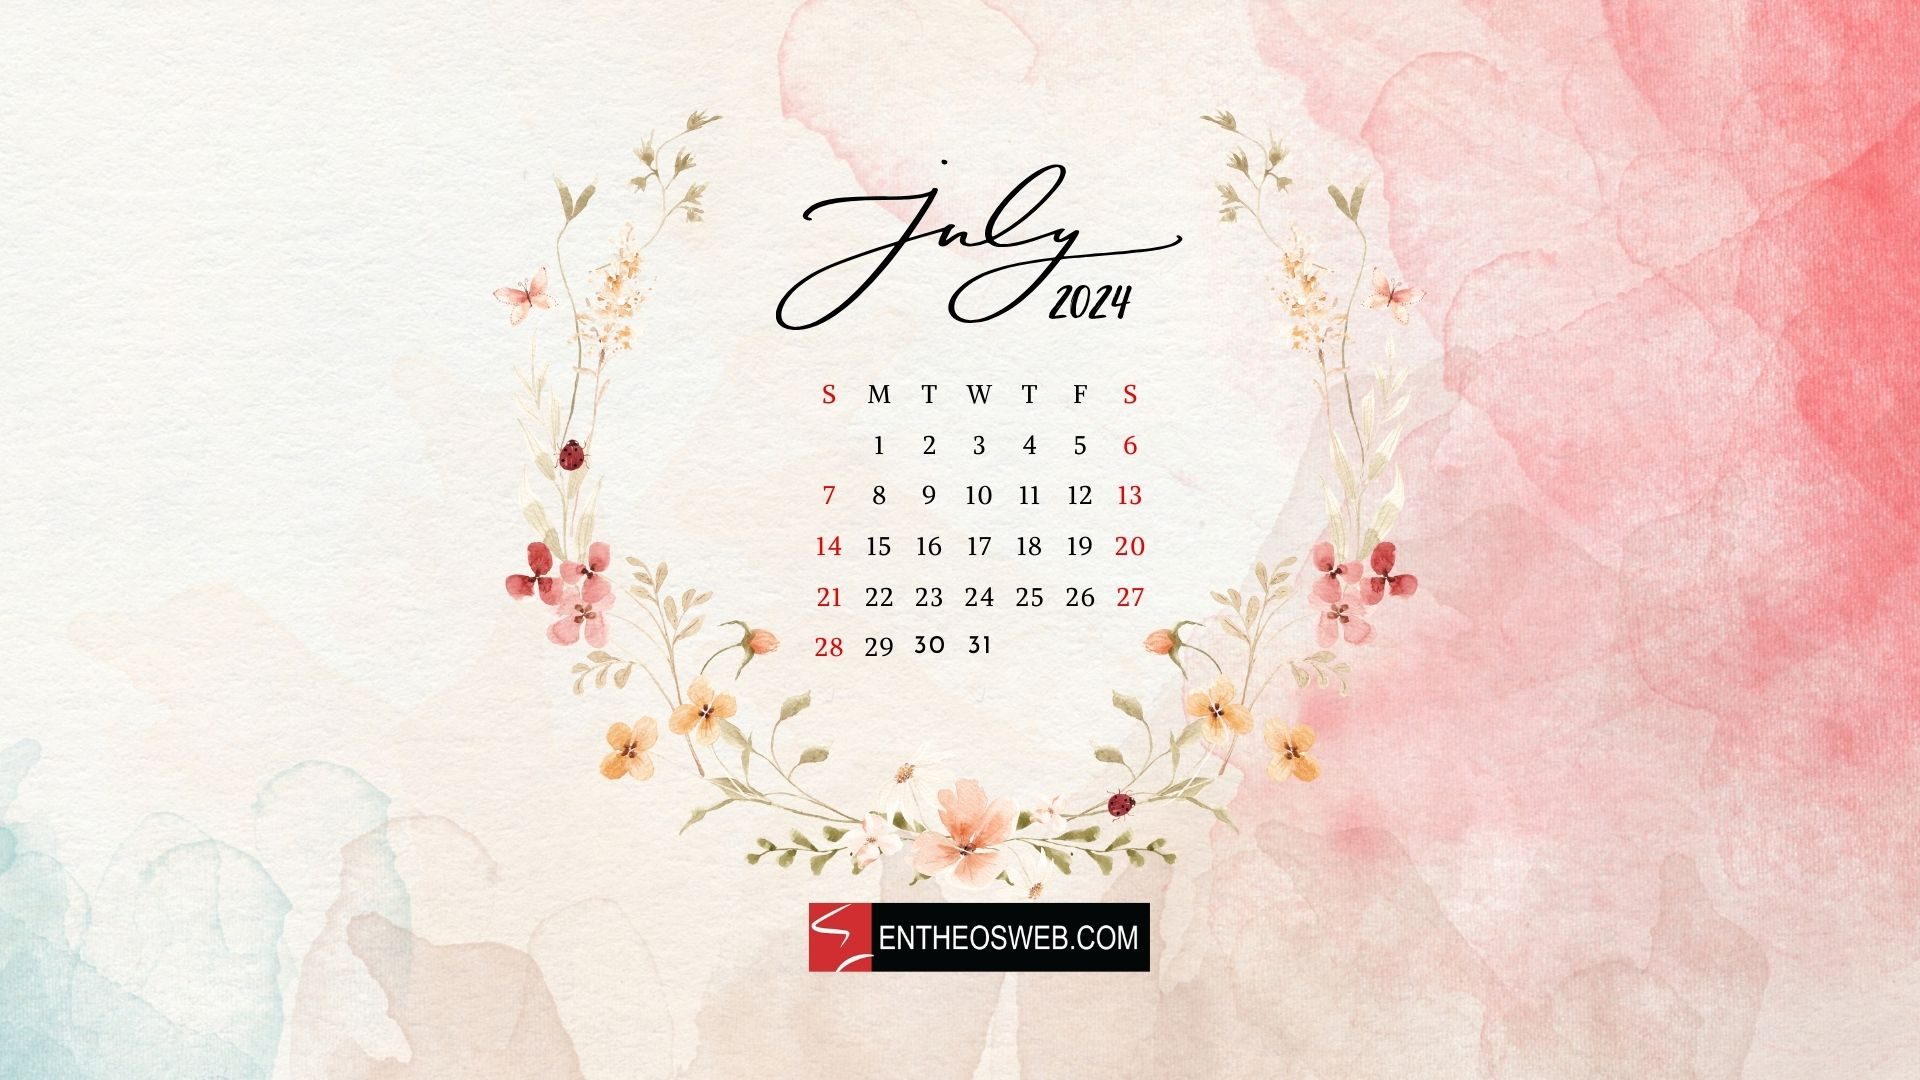 July 2024 Desktop Wallpaper Calendar | Entheosweb in July 2024 Calendar Background